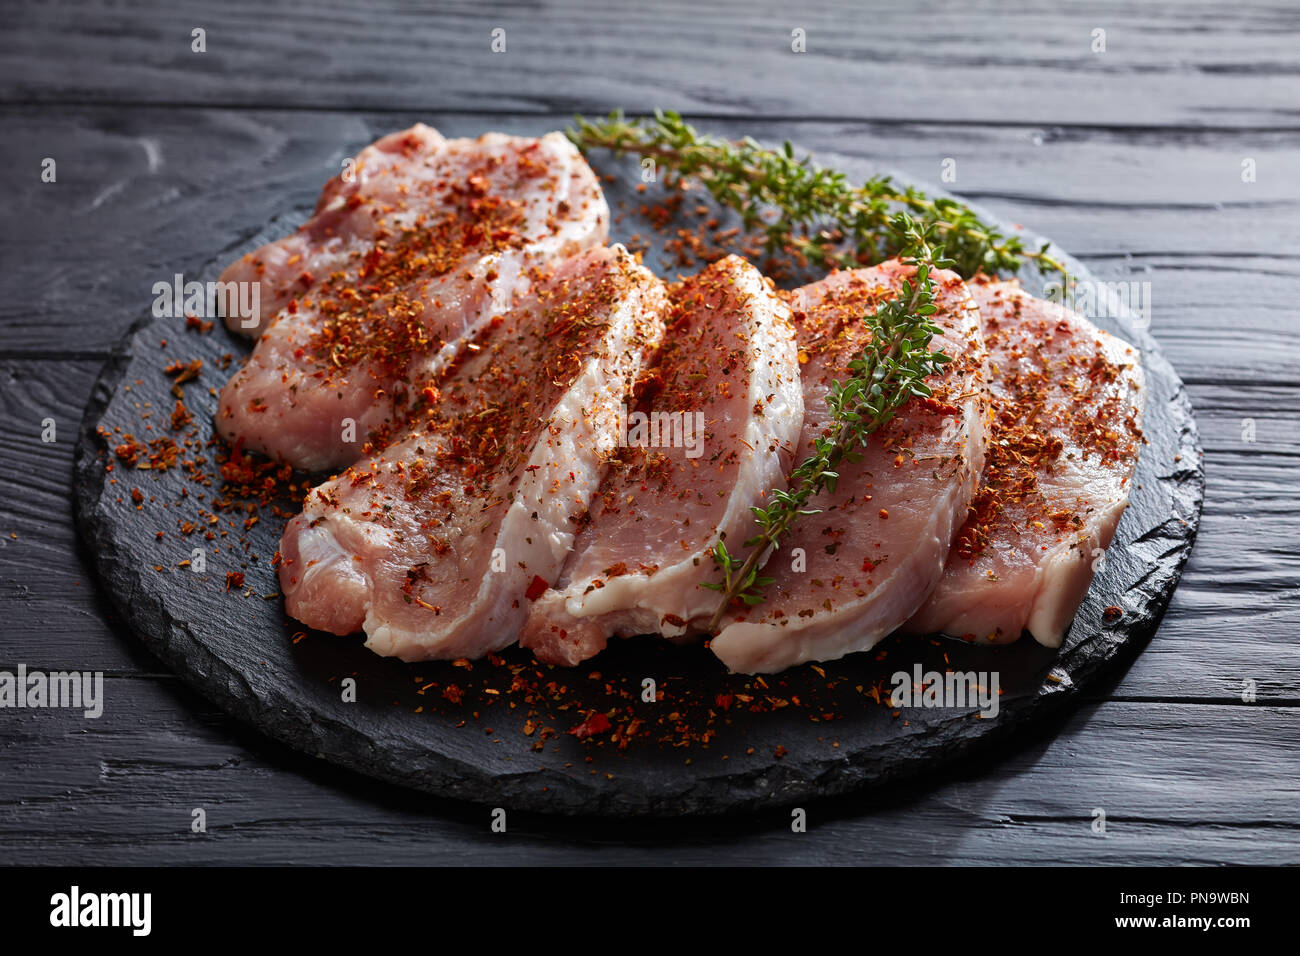 Schweinefleisch ohne Knochen schnitzel Filet gewürzt mit getrockneten Tomaten, Pfeffer, Paprika und dekoriert mit frischem Grün Thymian Stängel, auf einem runden schwarzen Stein boa Stockfoto